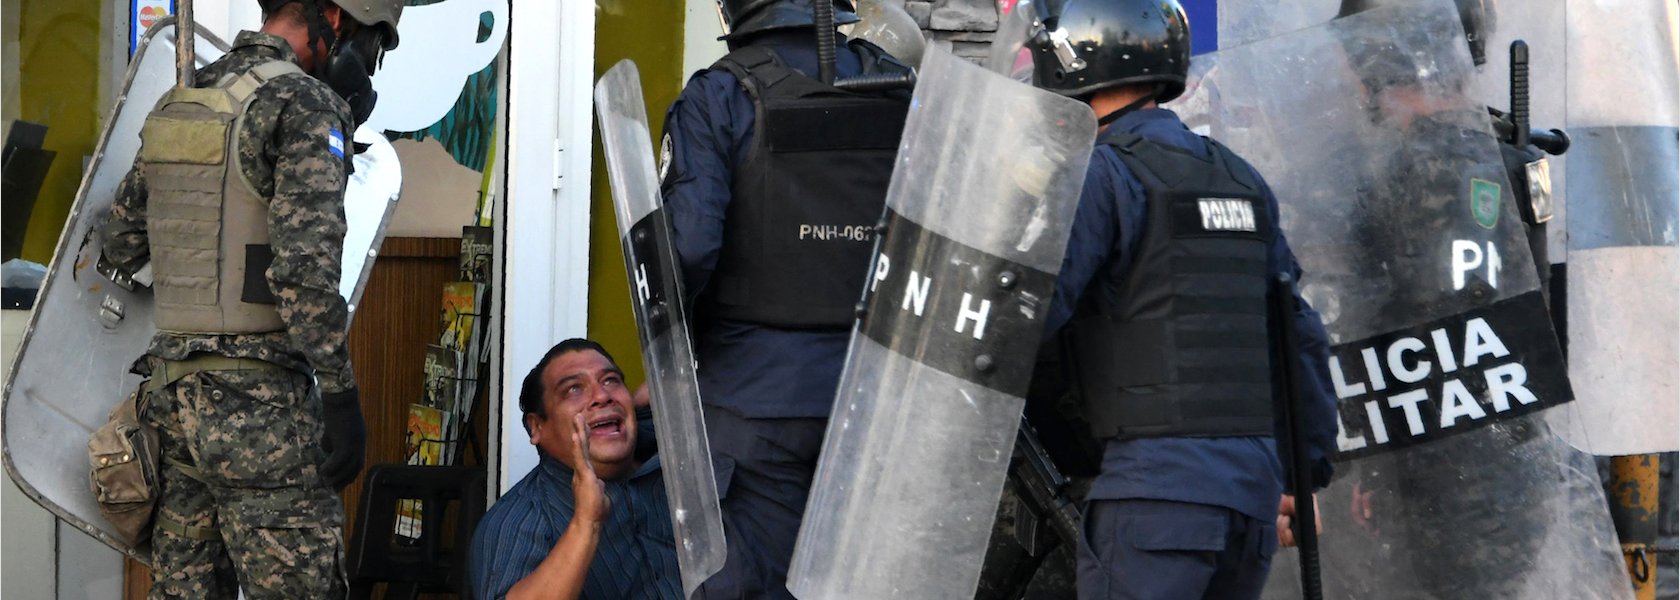 Estado hondureño continúa la violación de derechos humanos, denuncian  organizaciones internacionales